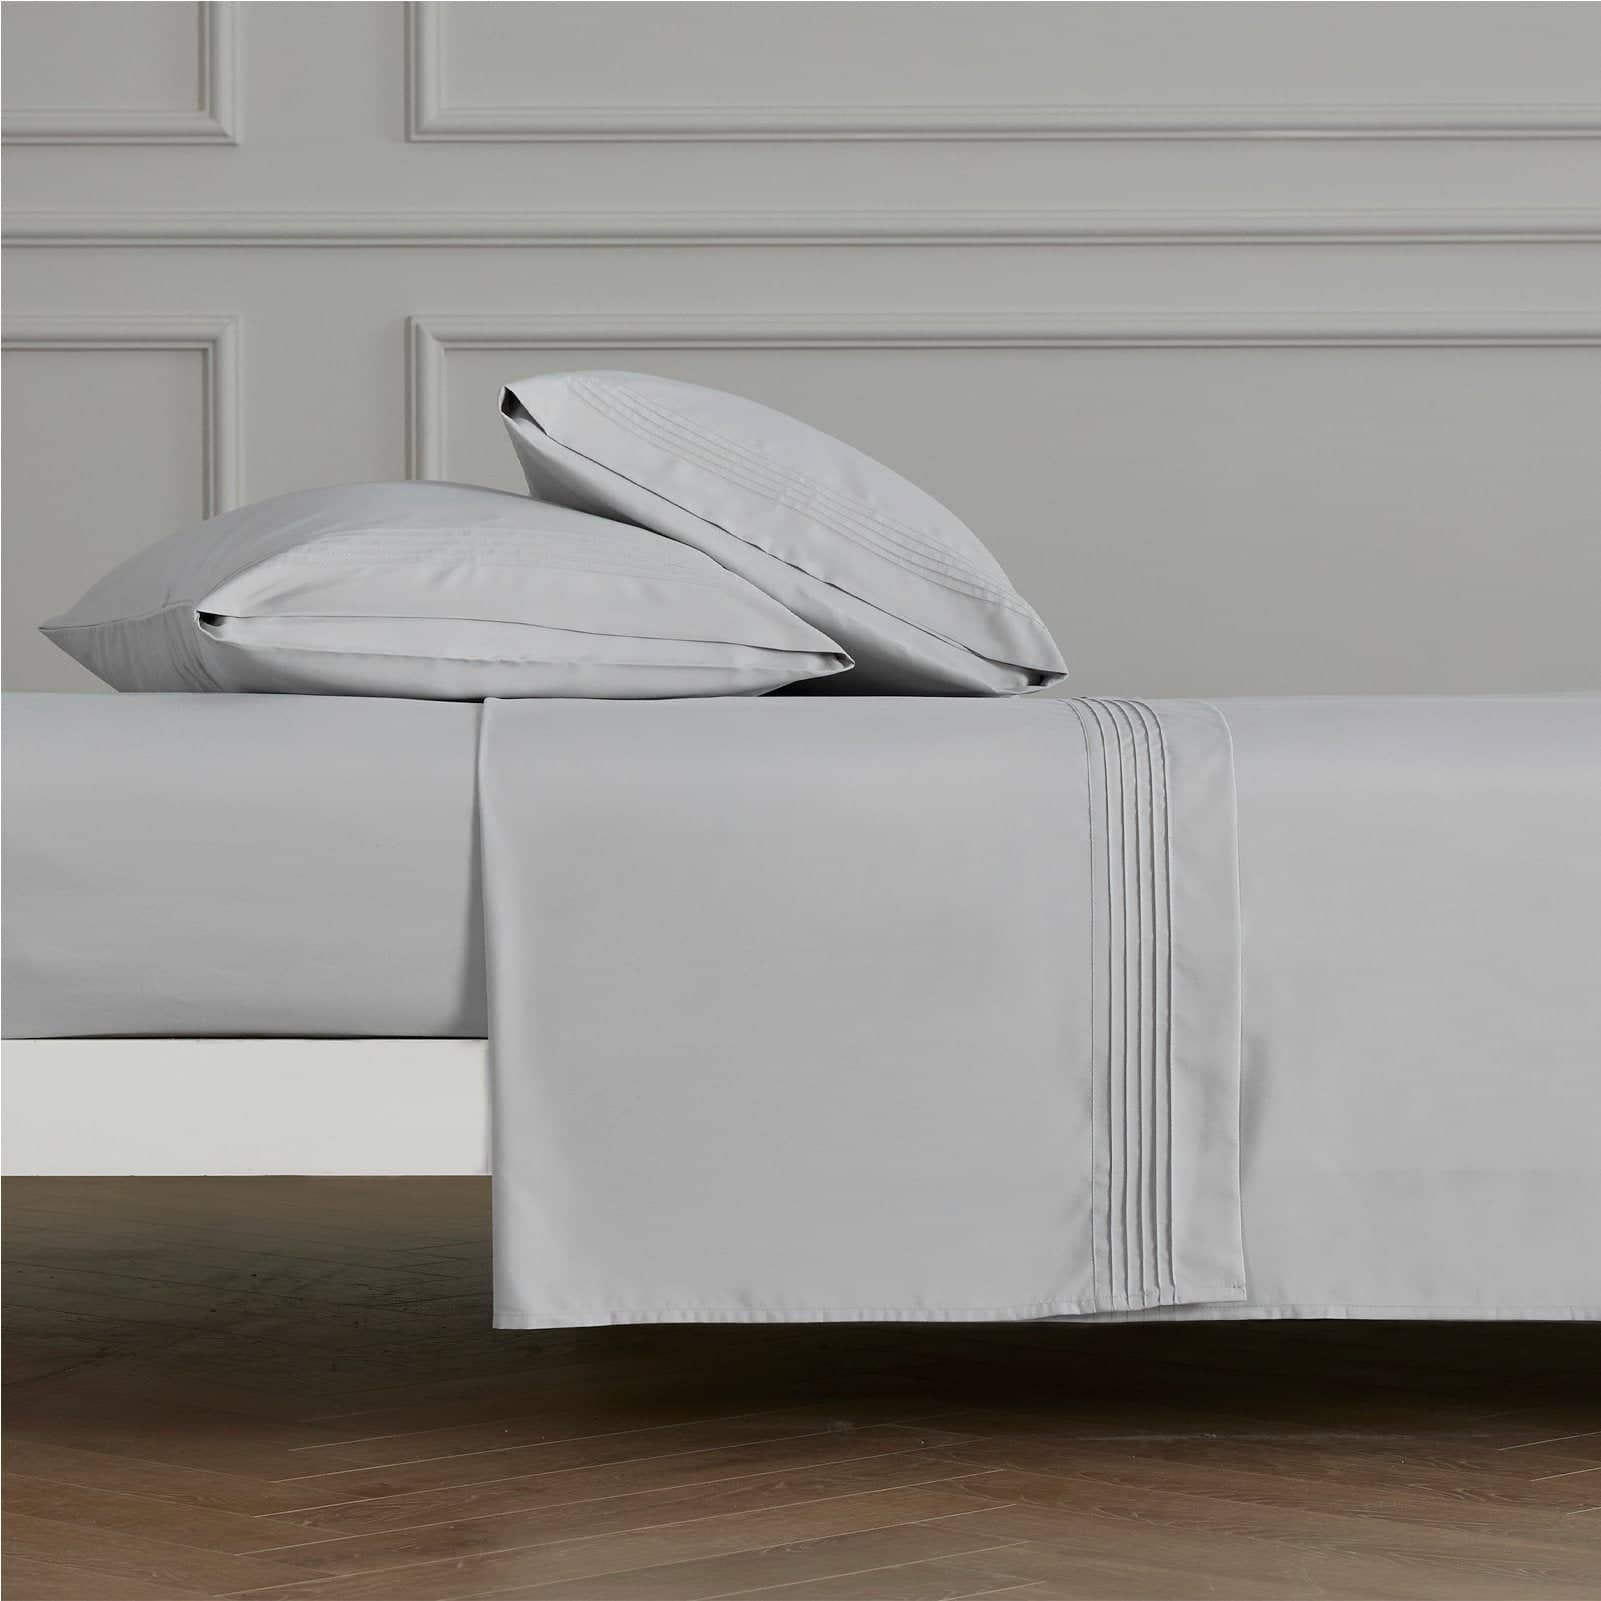 Bedsure | Moisture-Wicking Sheet Set lightgrey soft comfort